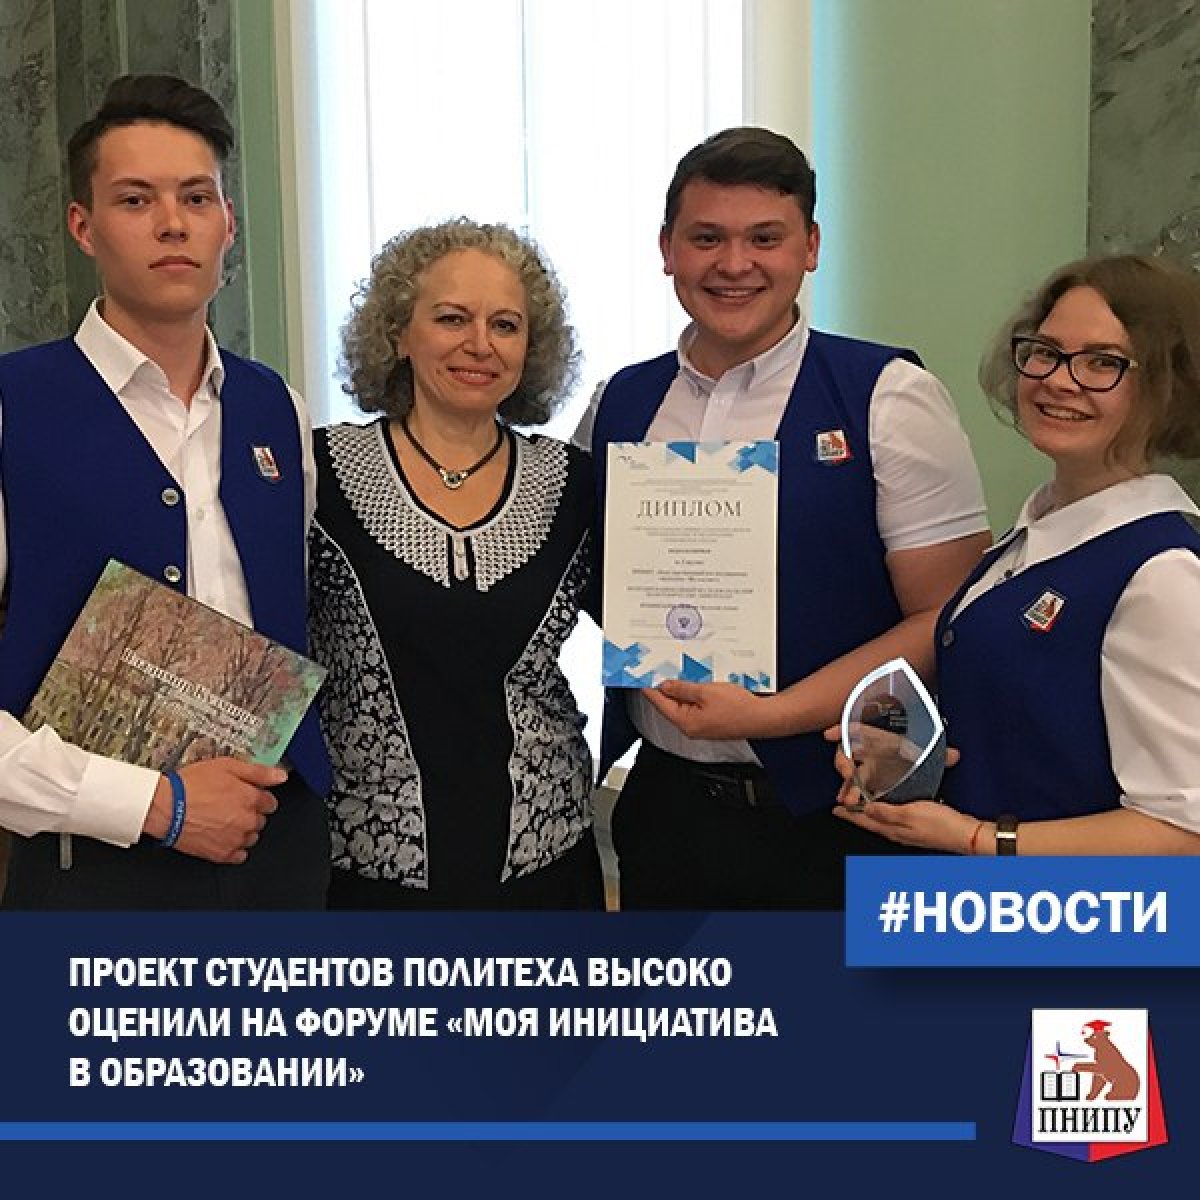 В Санкт-Петербурге состоялся XIII Молодежный форум «Моя инициатива в образовании», направленный на решение социально значимых проблем в области образования, участниками которого стали студенты со всех уголков России, а также из многих других стран